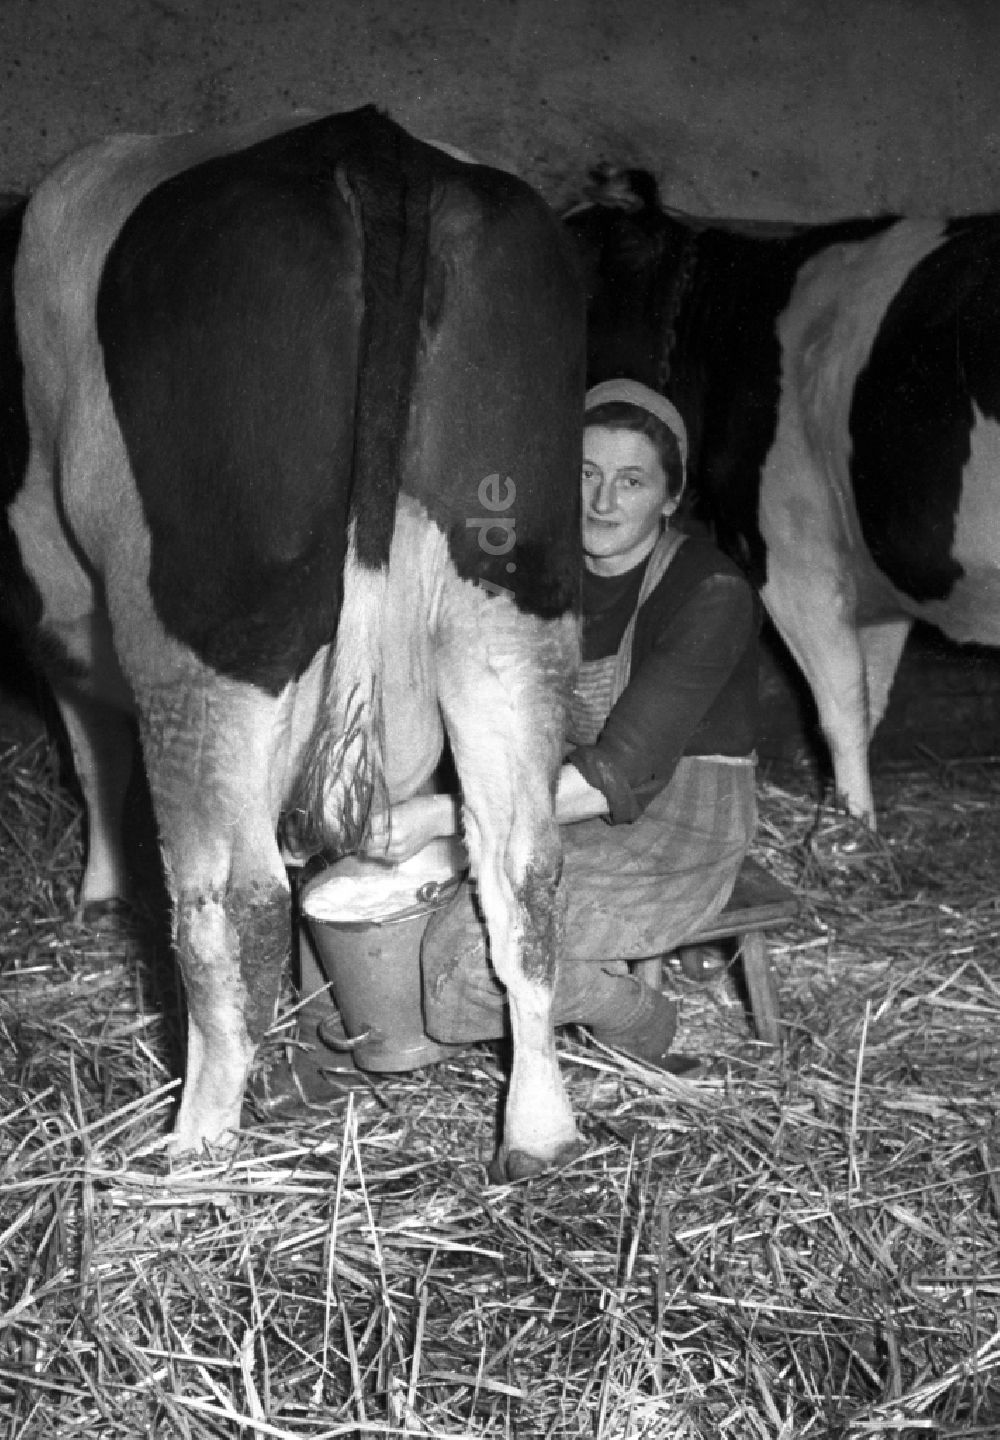 DDR-Fotoarchiv: Reichstädt - Arbeiten zur Milchproduktion in einem Landwirtschaftsbetrieb in Reichstädt in Thüringen in der DDR